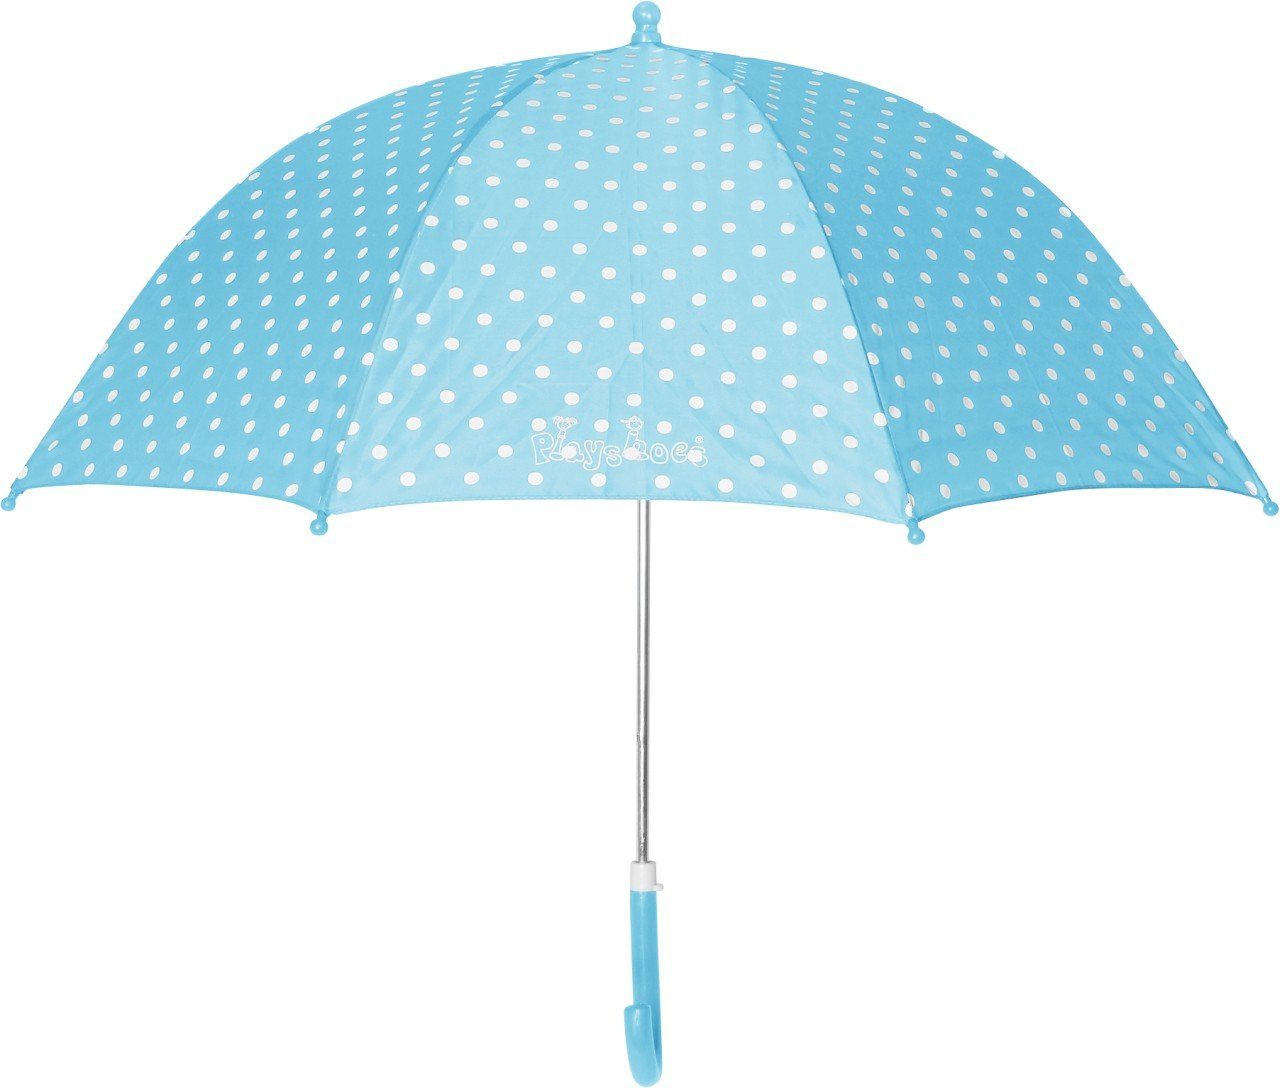 Stockregenschirm Playshoes Regenschirm Punkte türkis